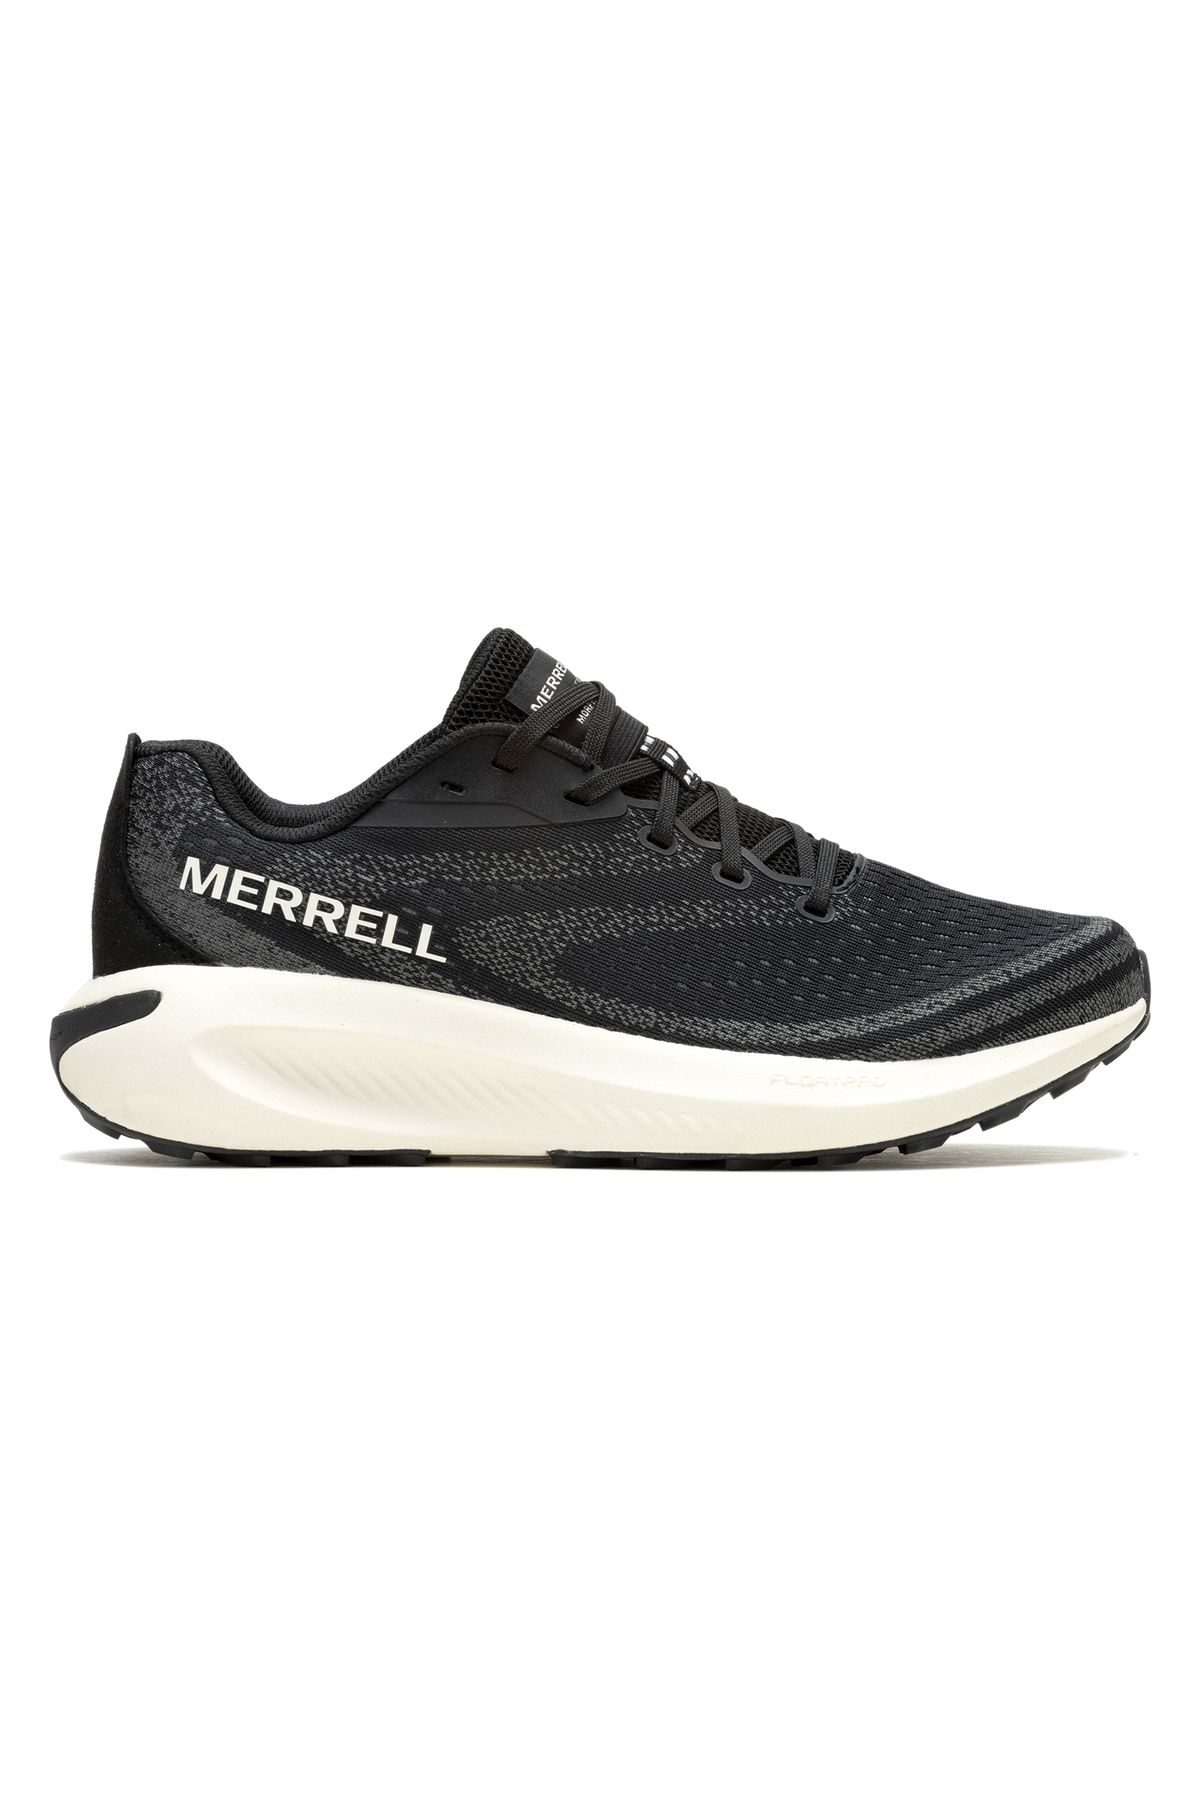 Merrell Morphlıte Siyah Erkek Patika Koşu Ayakkabısı